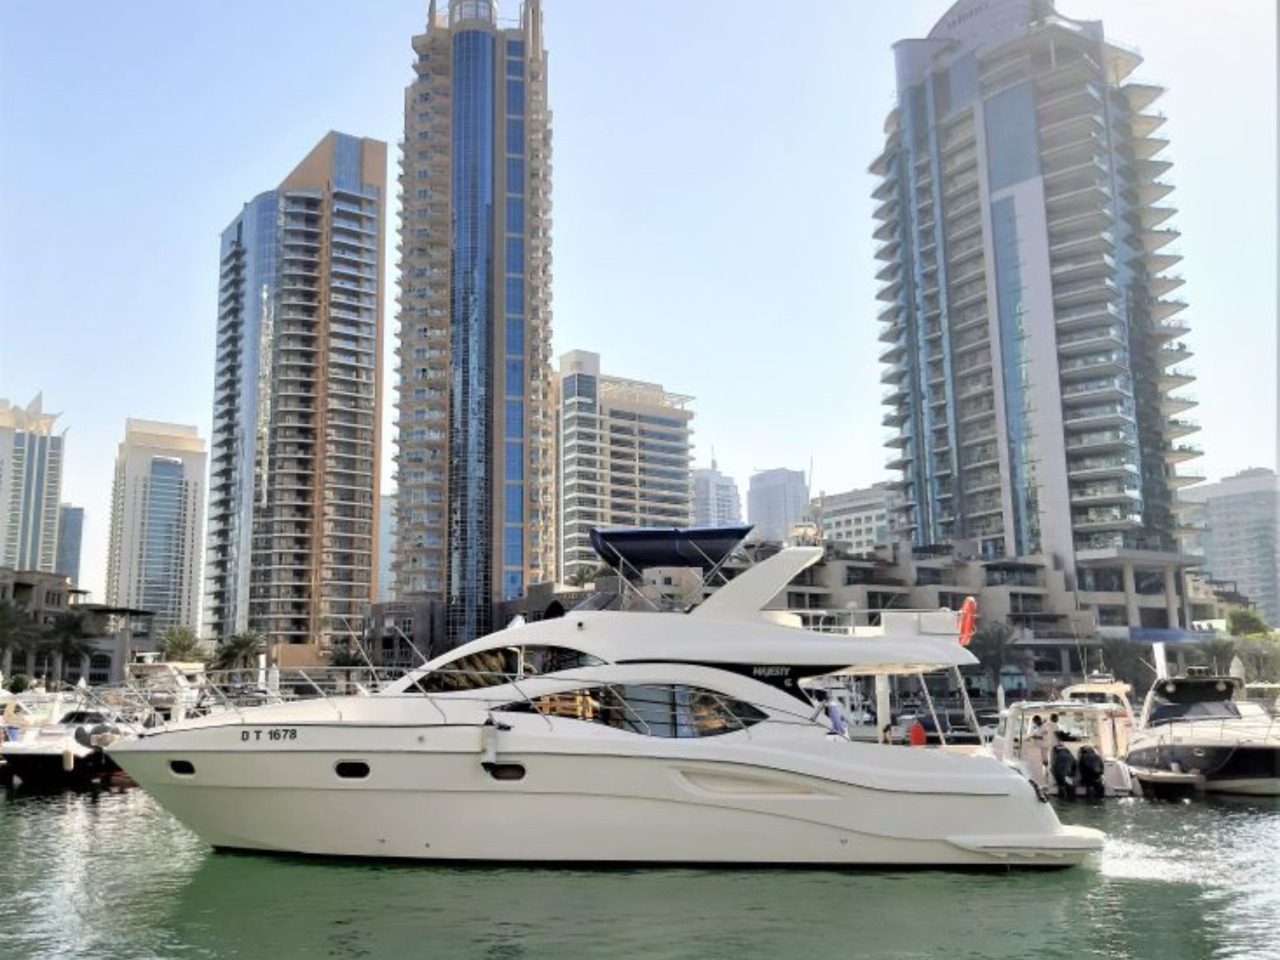 Частный тур на яхте в Дубае | Цена 520$, отзывы, описание экскурсии